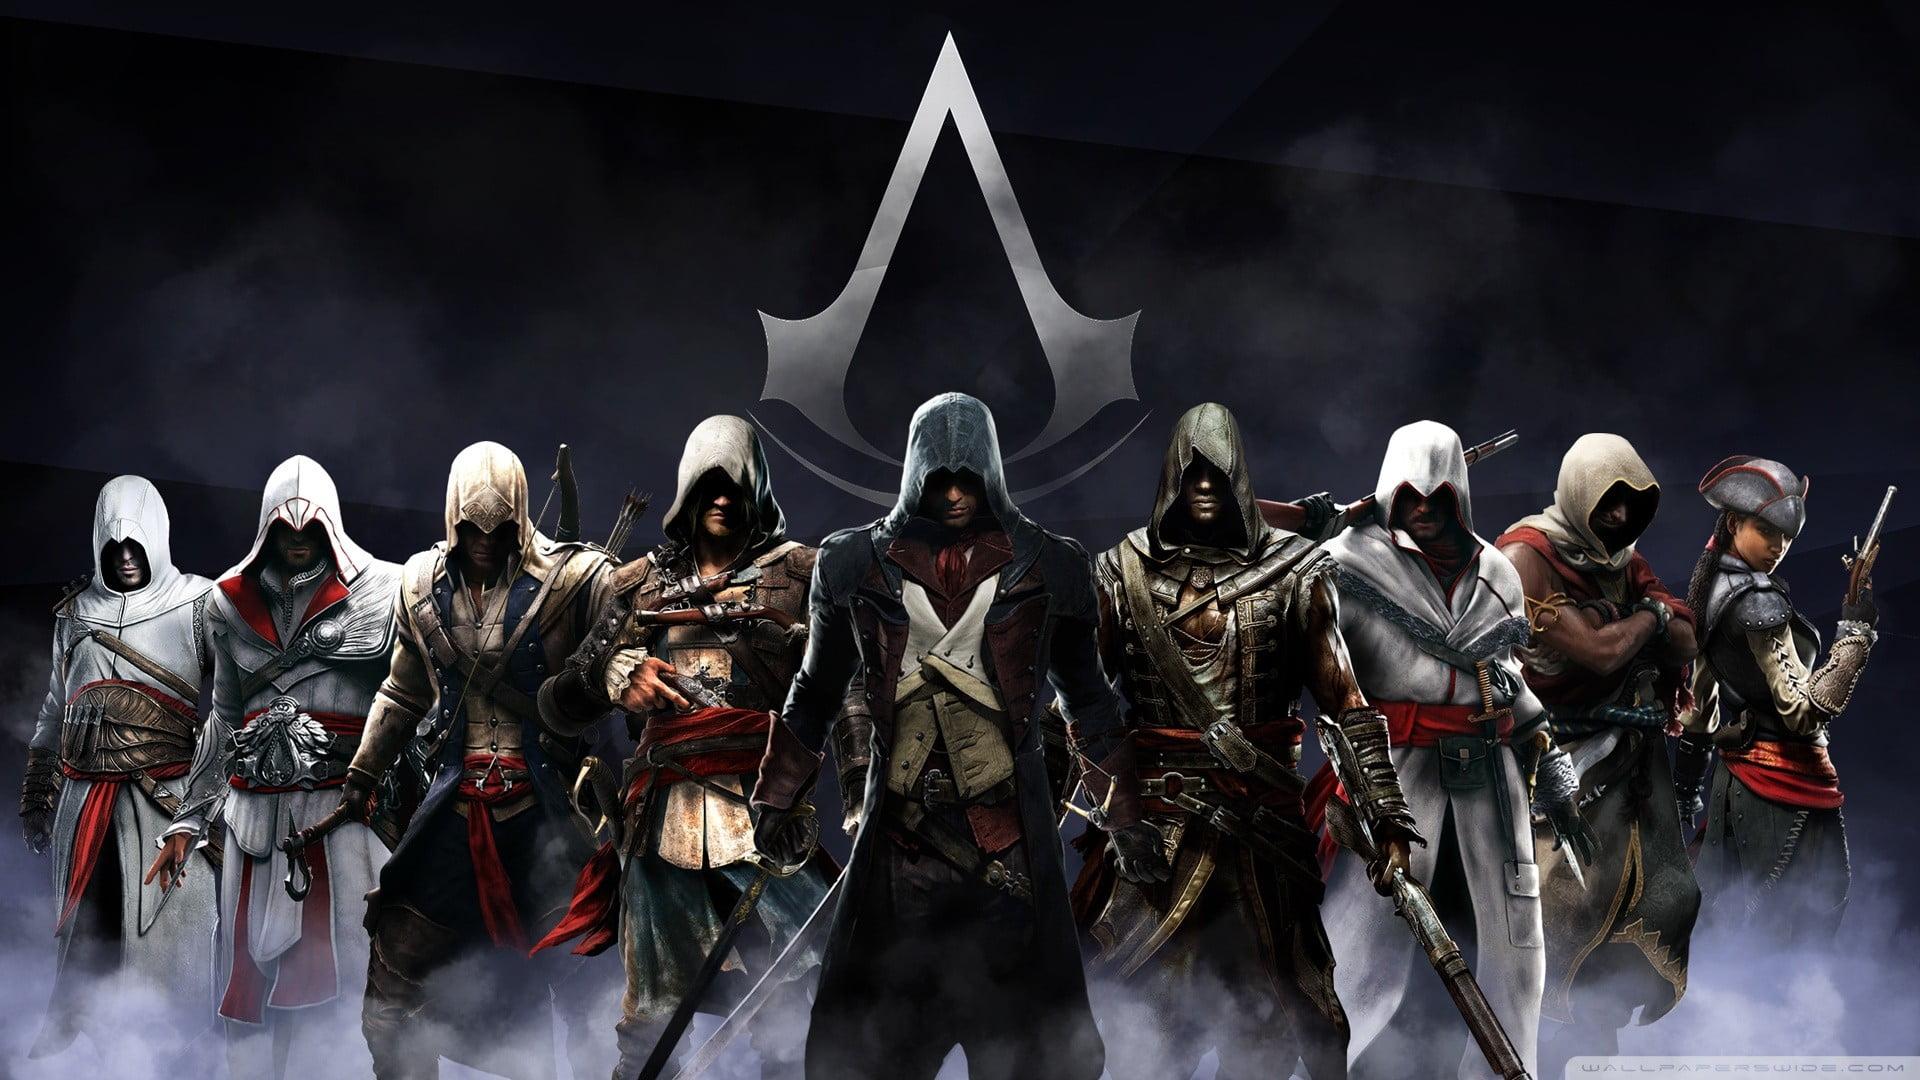 Assassin's Creed digital wallpaper, Assassin's Creed, video